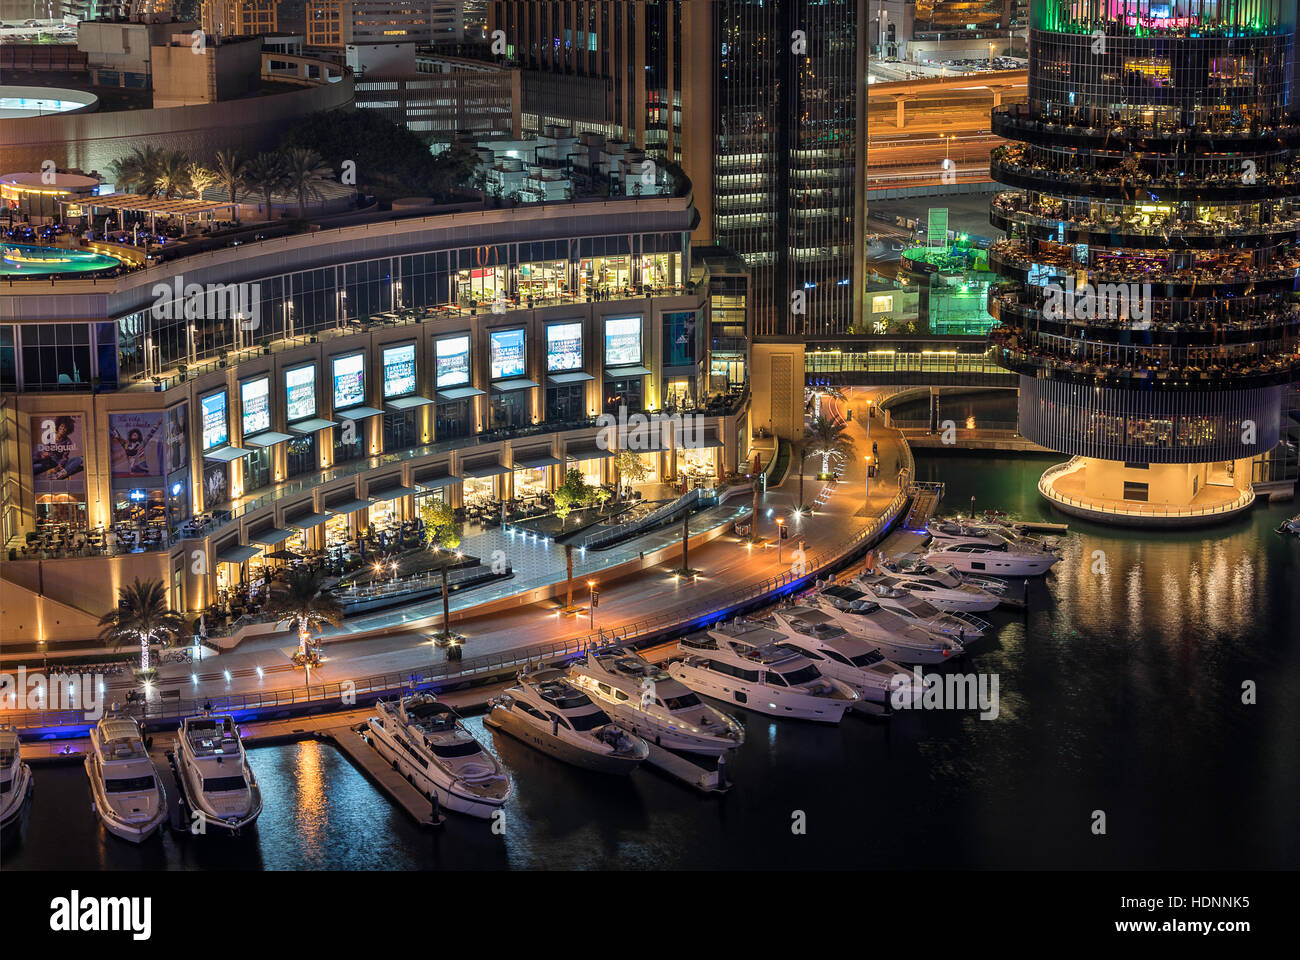 Jachthafen von Dubai in den Vereinigten Arabischen Emiraten Stockfoto